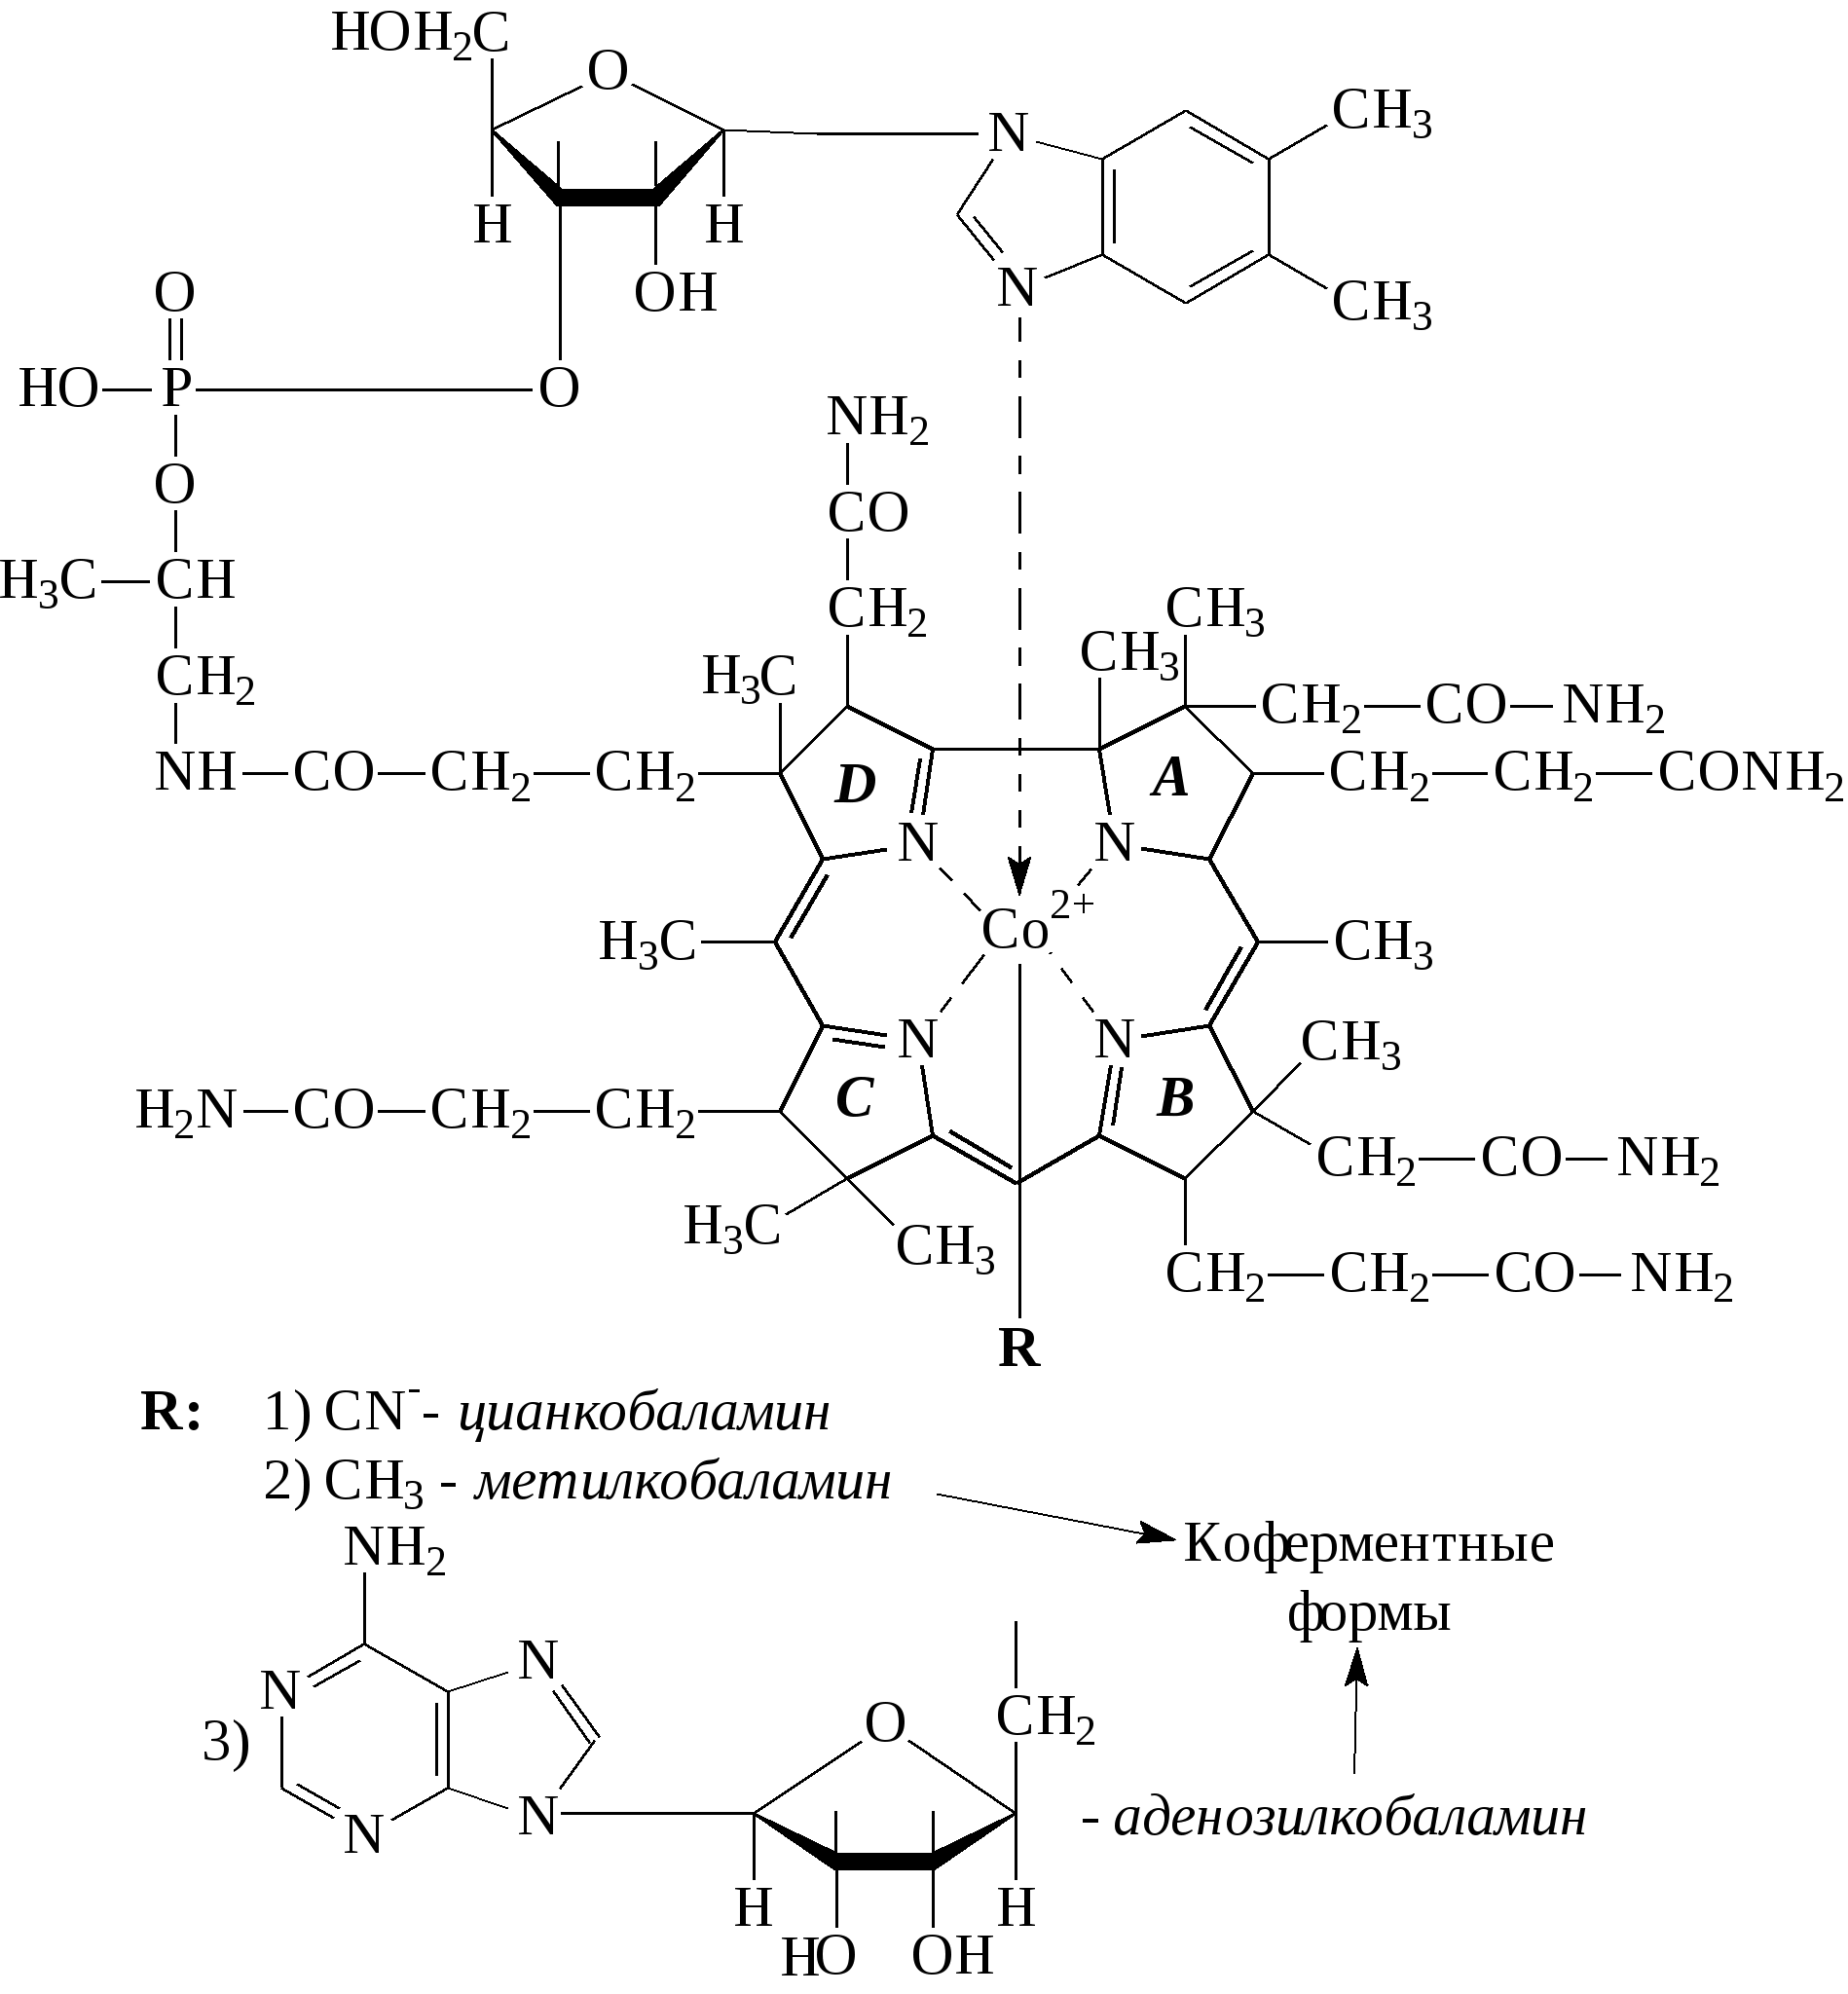 Витамин в12 кобаламин формула. Витамин в12 структурная формула. Витамин б12 структурная формула. Витамин б12 химическая формула. Активный б 12